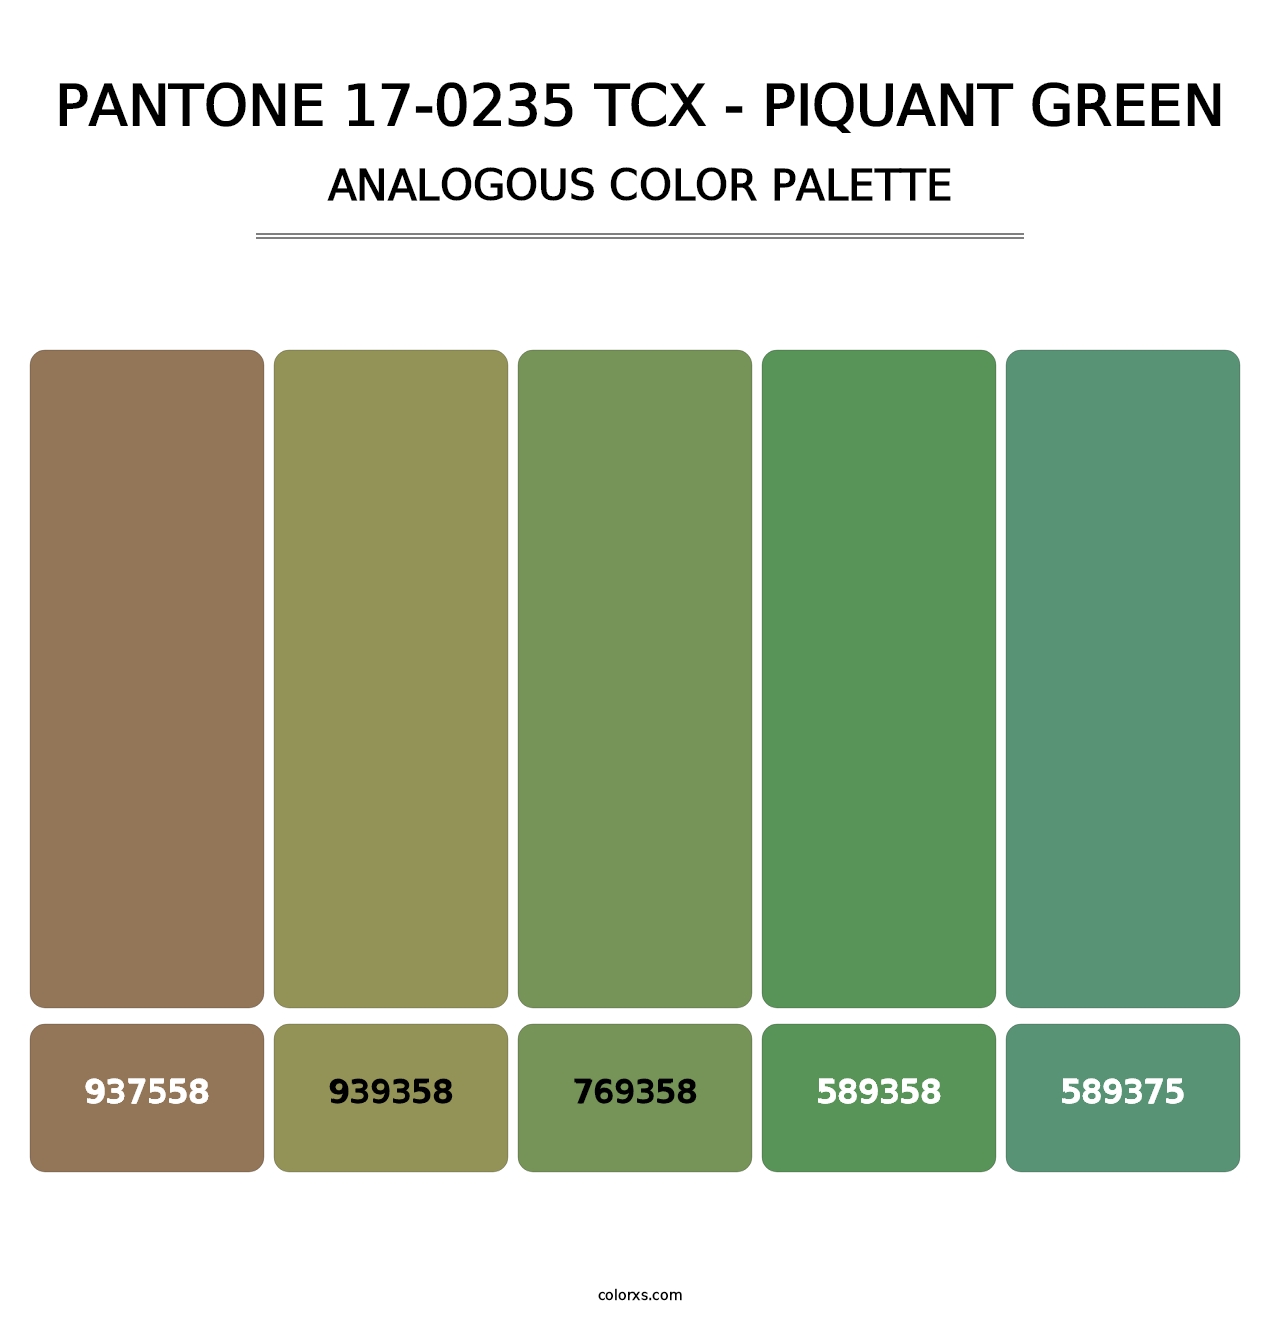 PANTONE 17-0235 TCX - Piquant Green - Analogous Color Palette